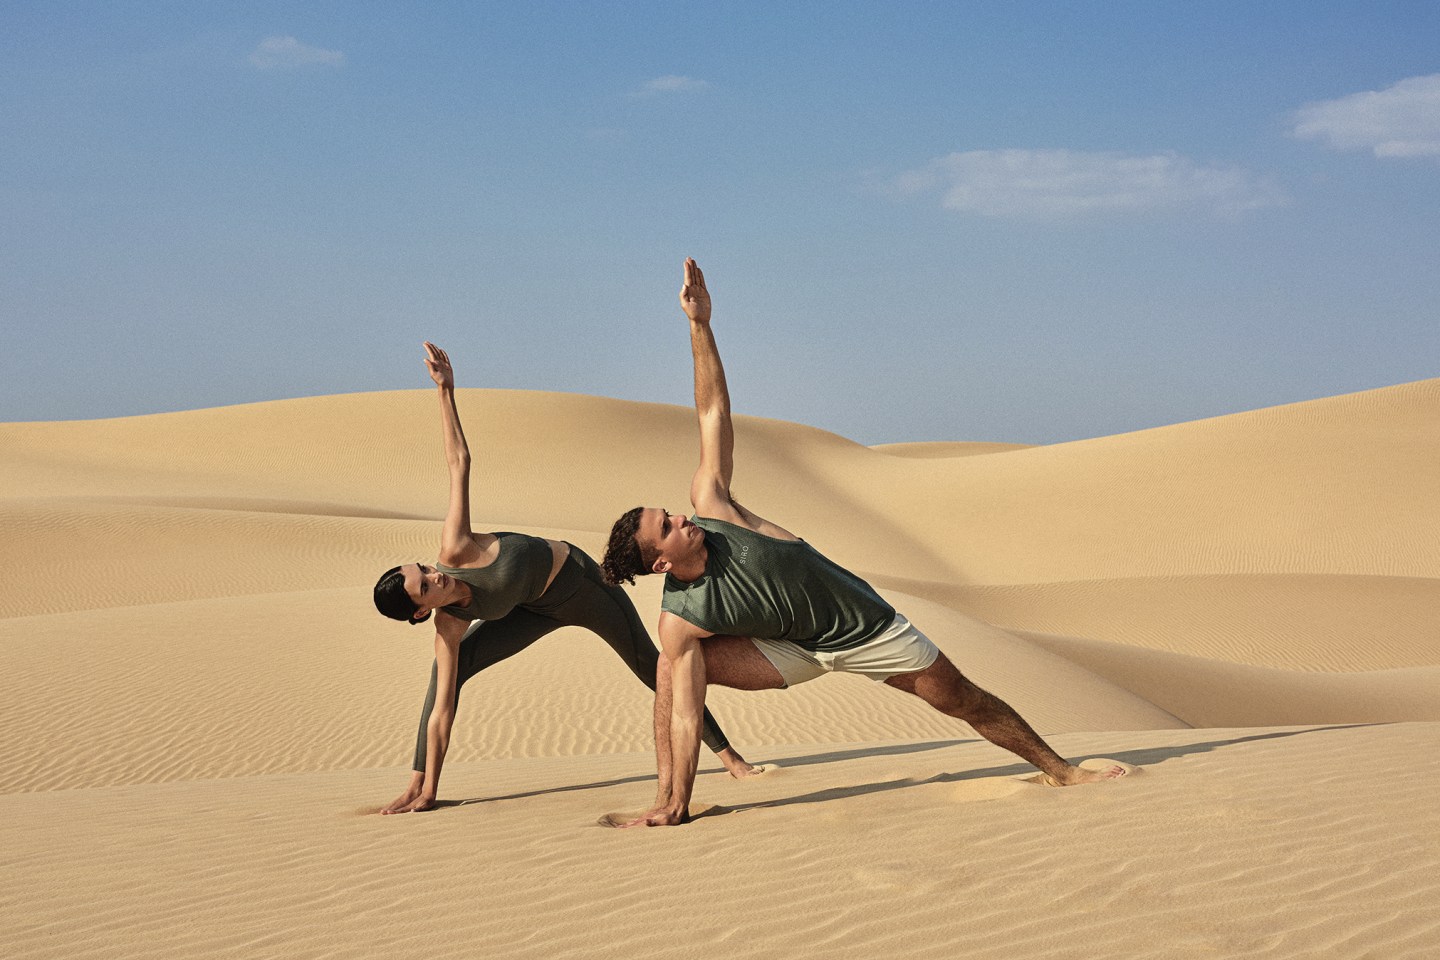 Yoga in the desert. 
Courtesy of SIRO